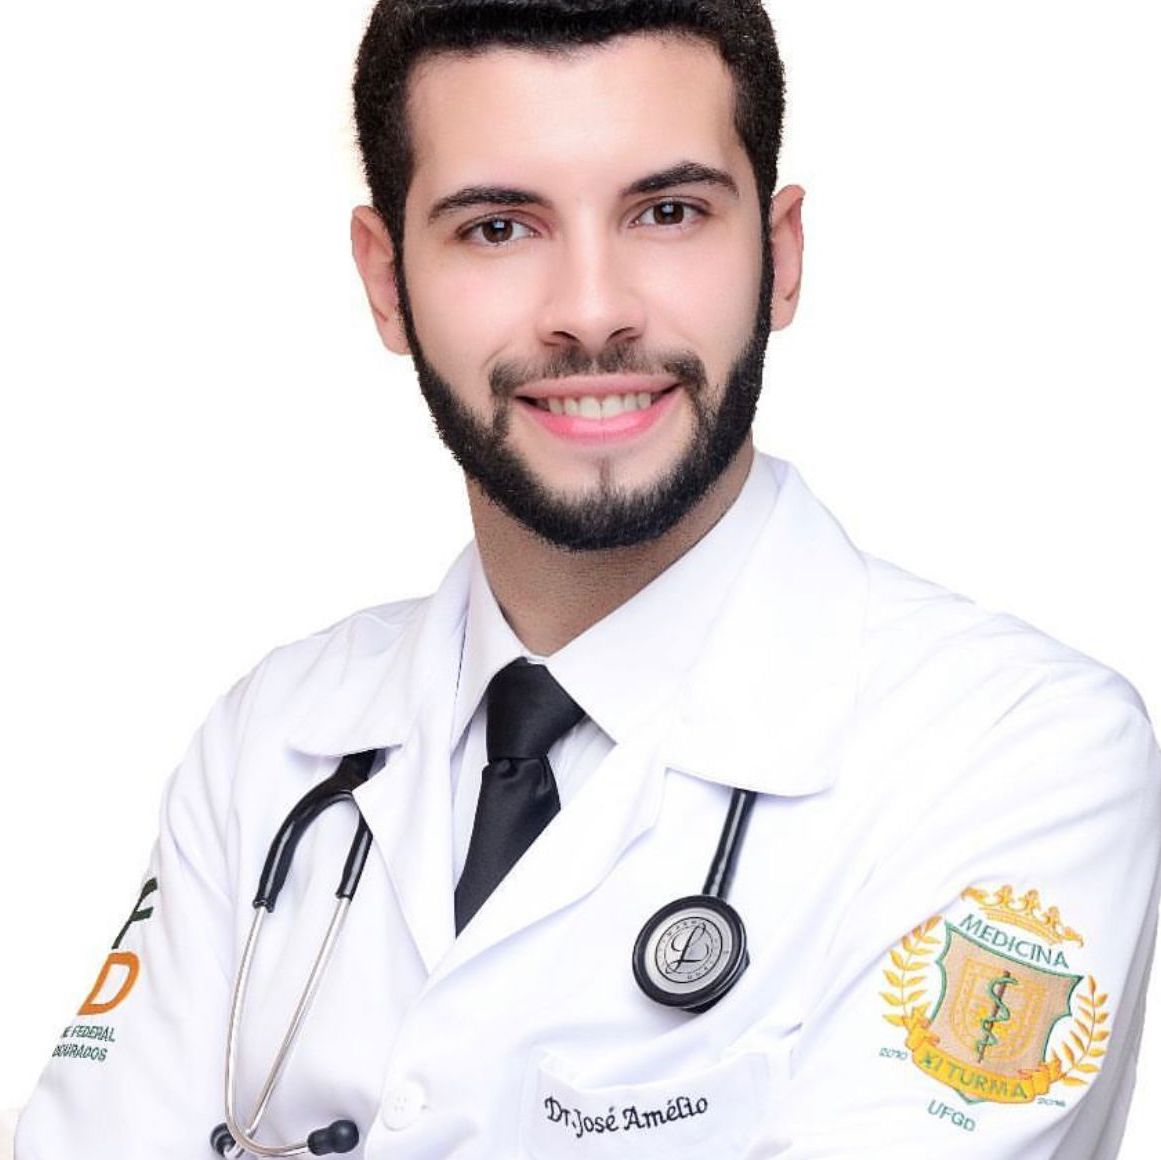 Dr. Jos Amlio Arantes Machado